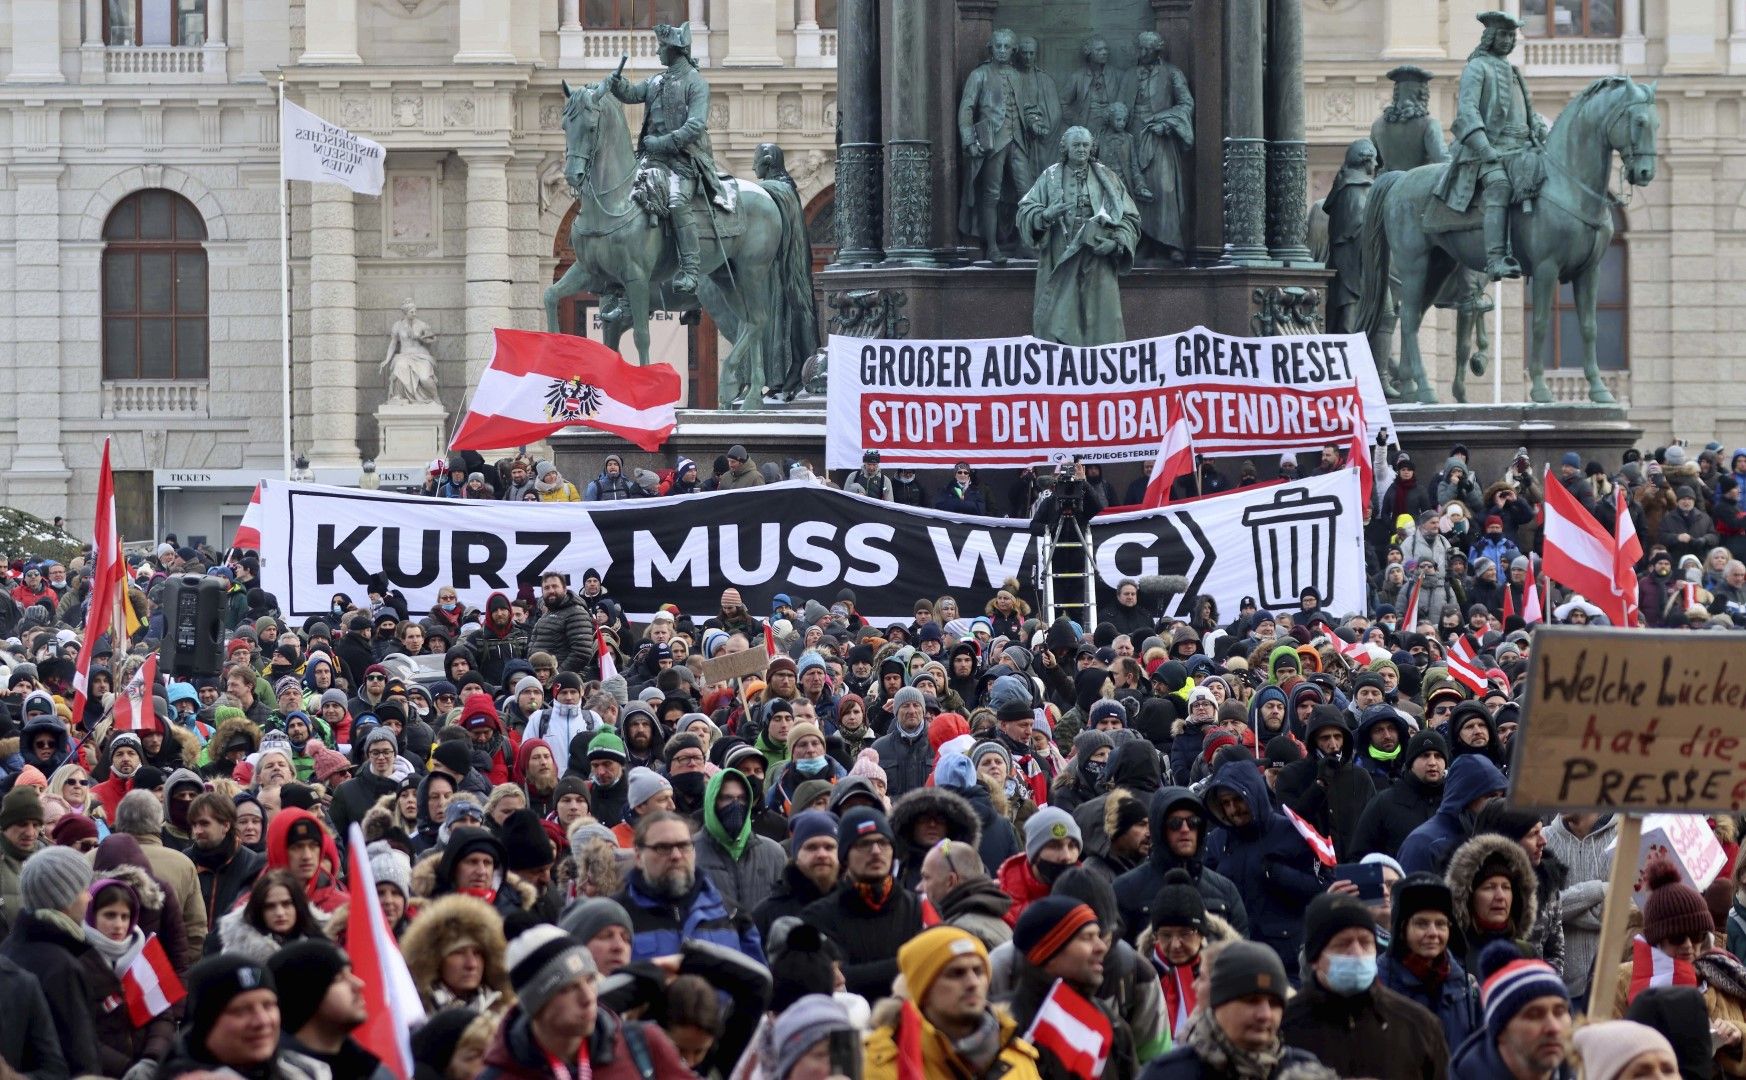 "Курц трябва да си ходи" - такъв плакат издигнаха във Виена в събота, 16 януари, протестиращи срещу ограничителните мерки в Австрия, наложени от правителството на канцлера Себастиан Курц